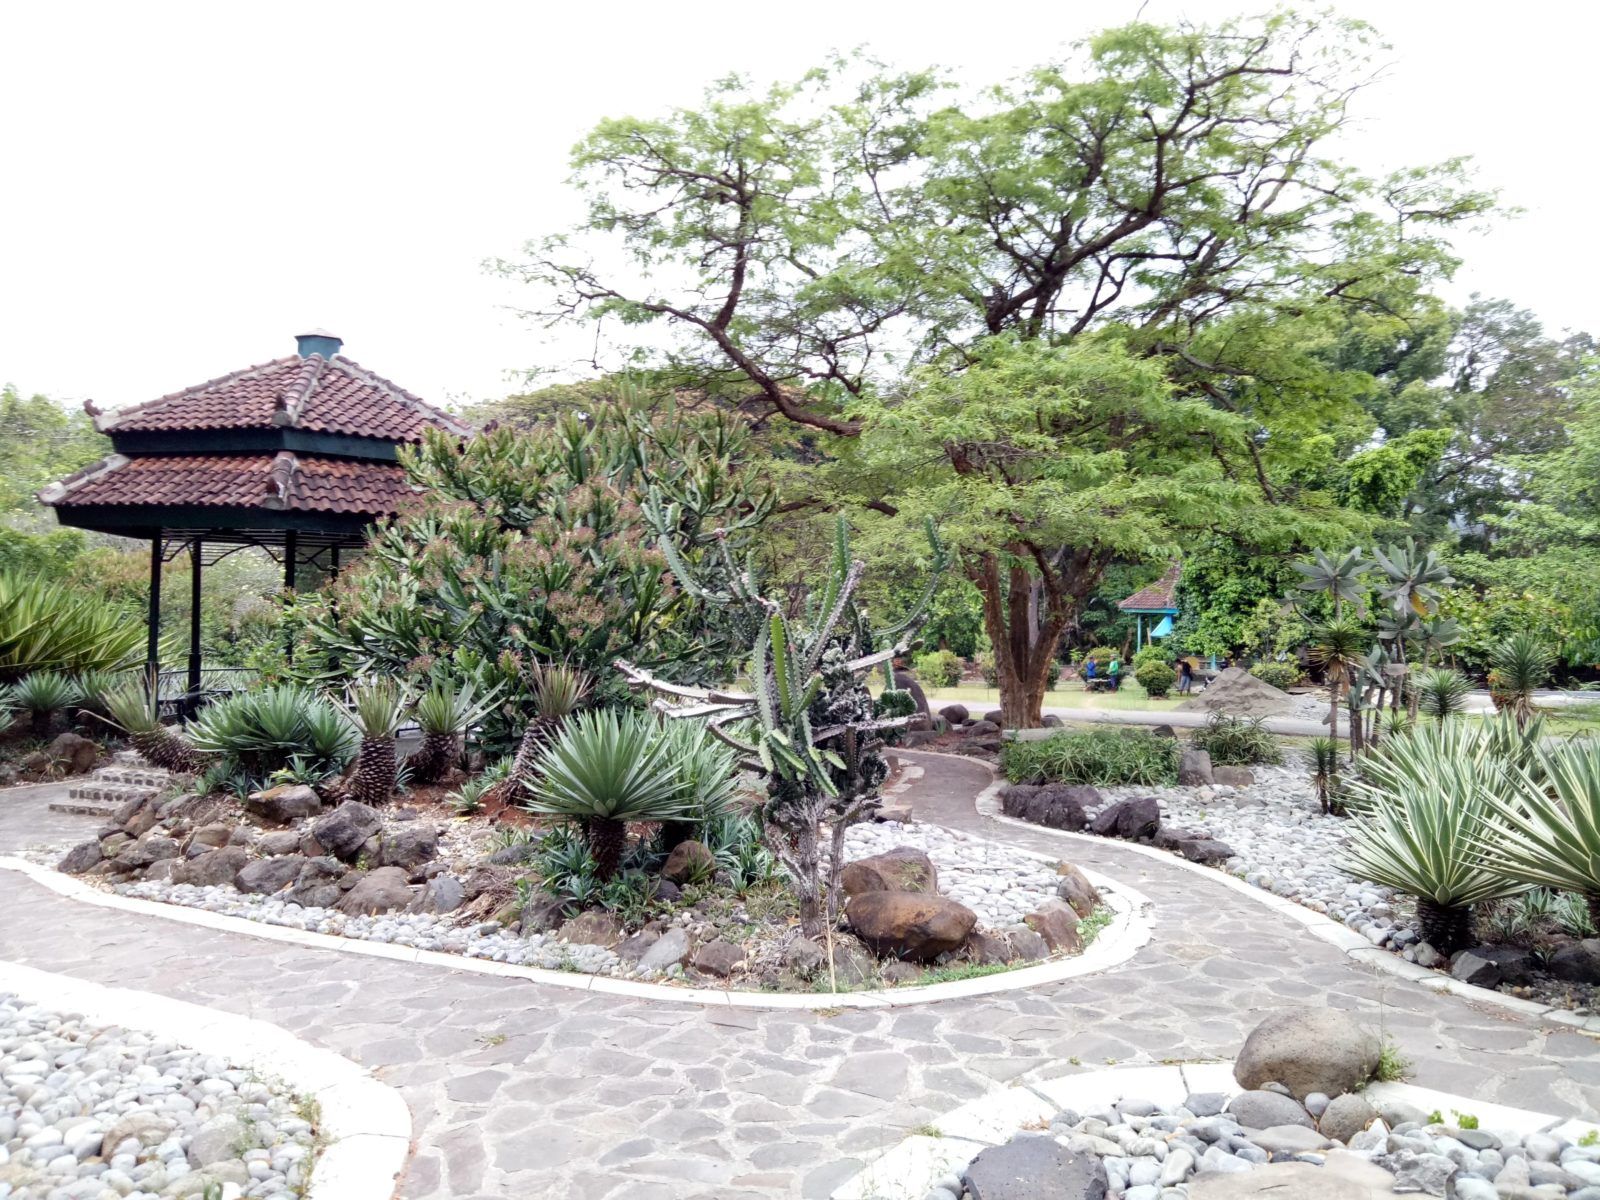 taman wisata dan edukasi kebun raya purwodadi